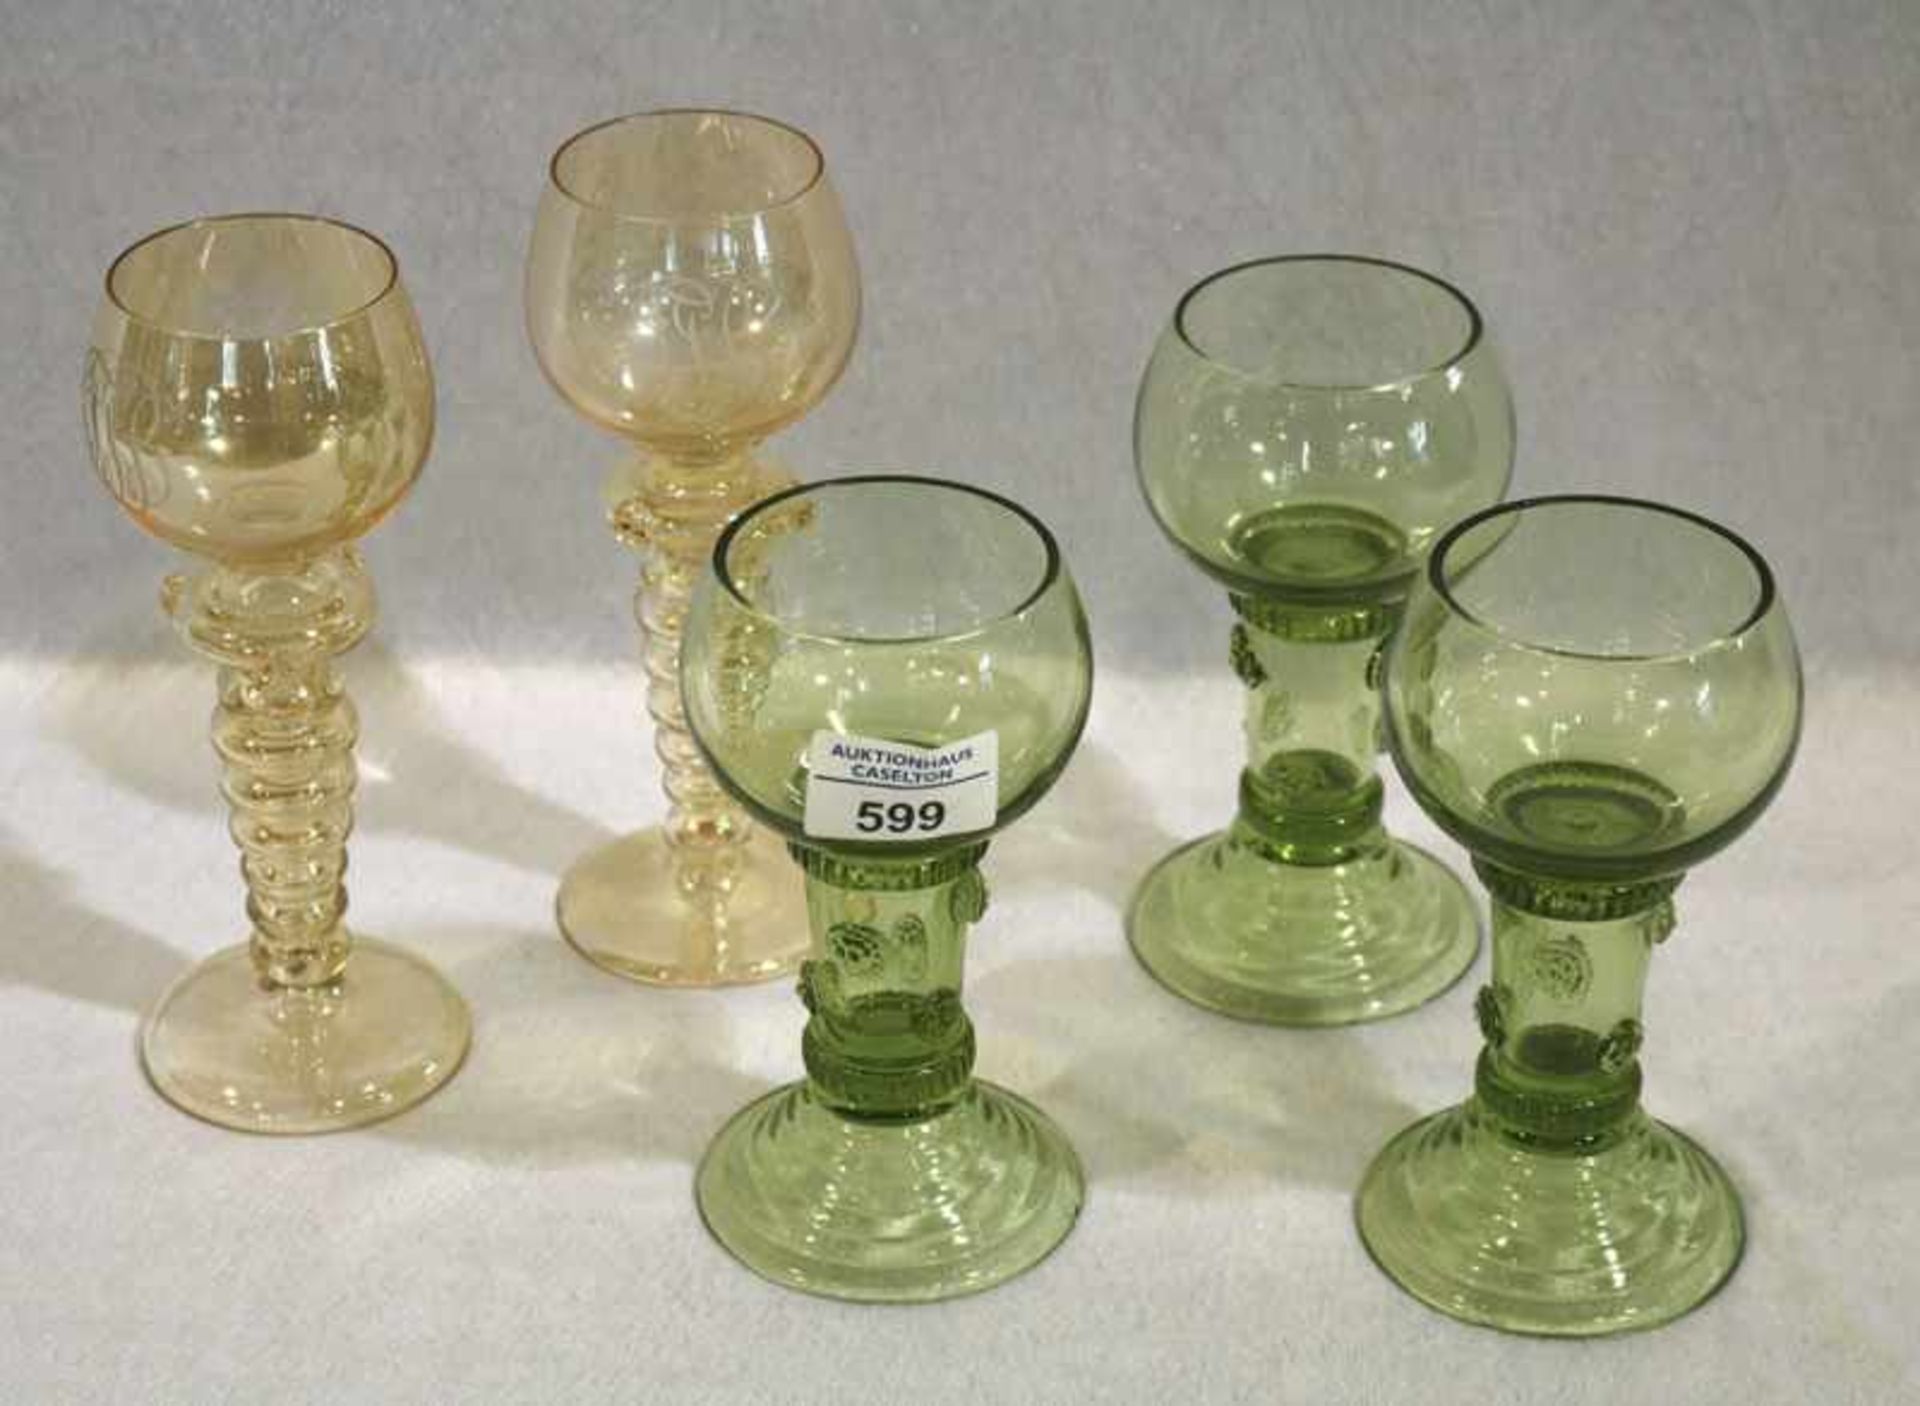 Konvolut von 5 Theresienthal Weingläsern, 3 grüne und 2 gelbliche Gläser, hohler Fuß und